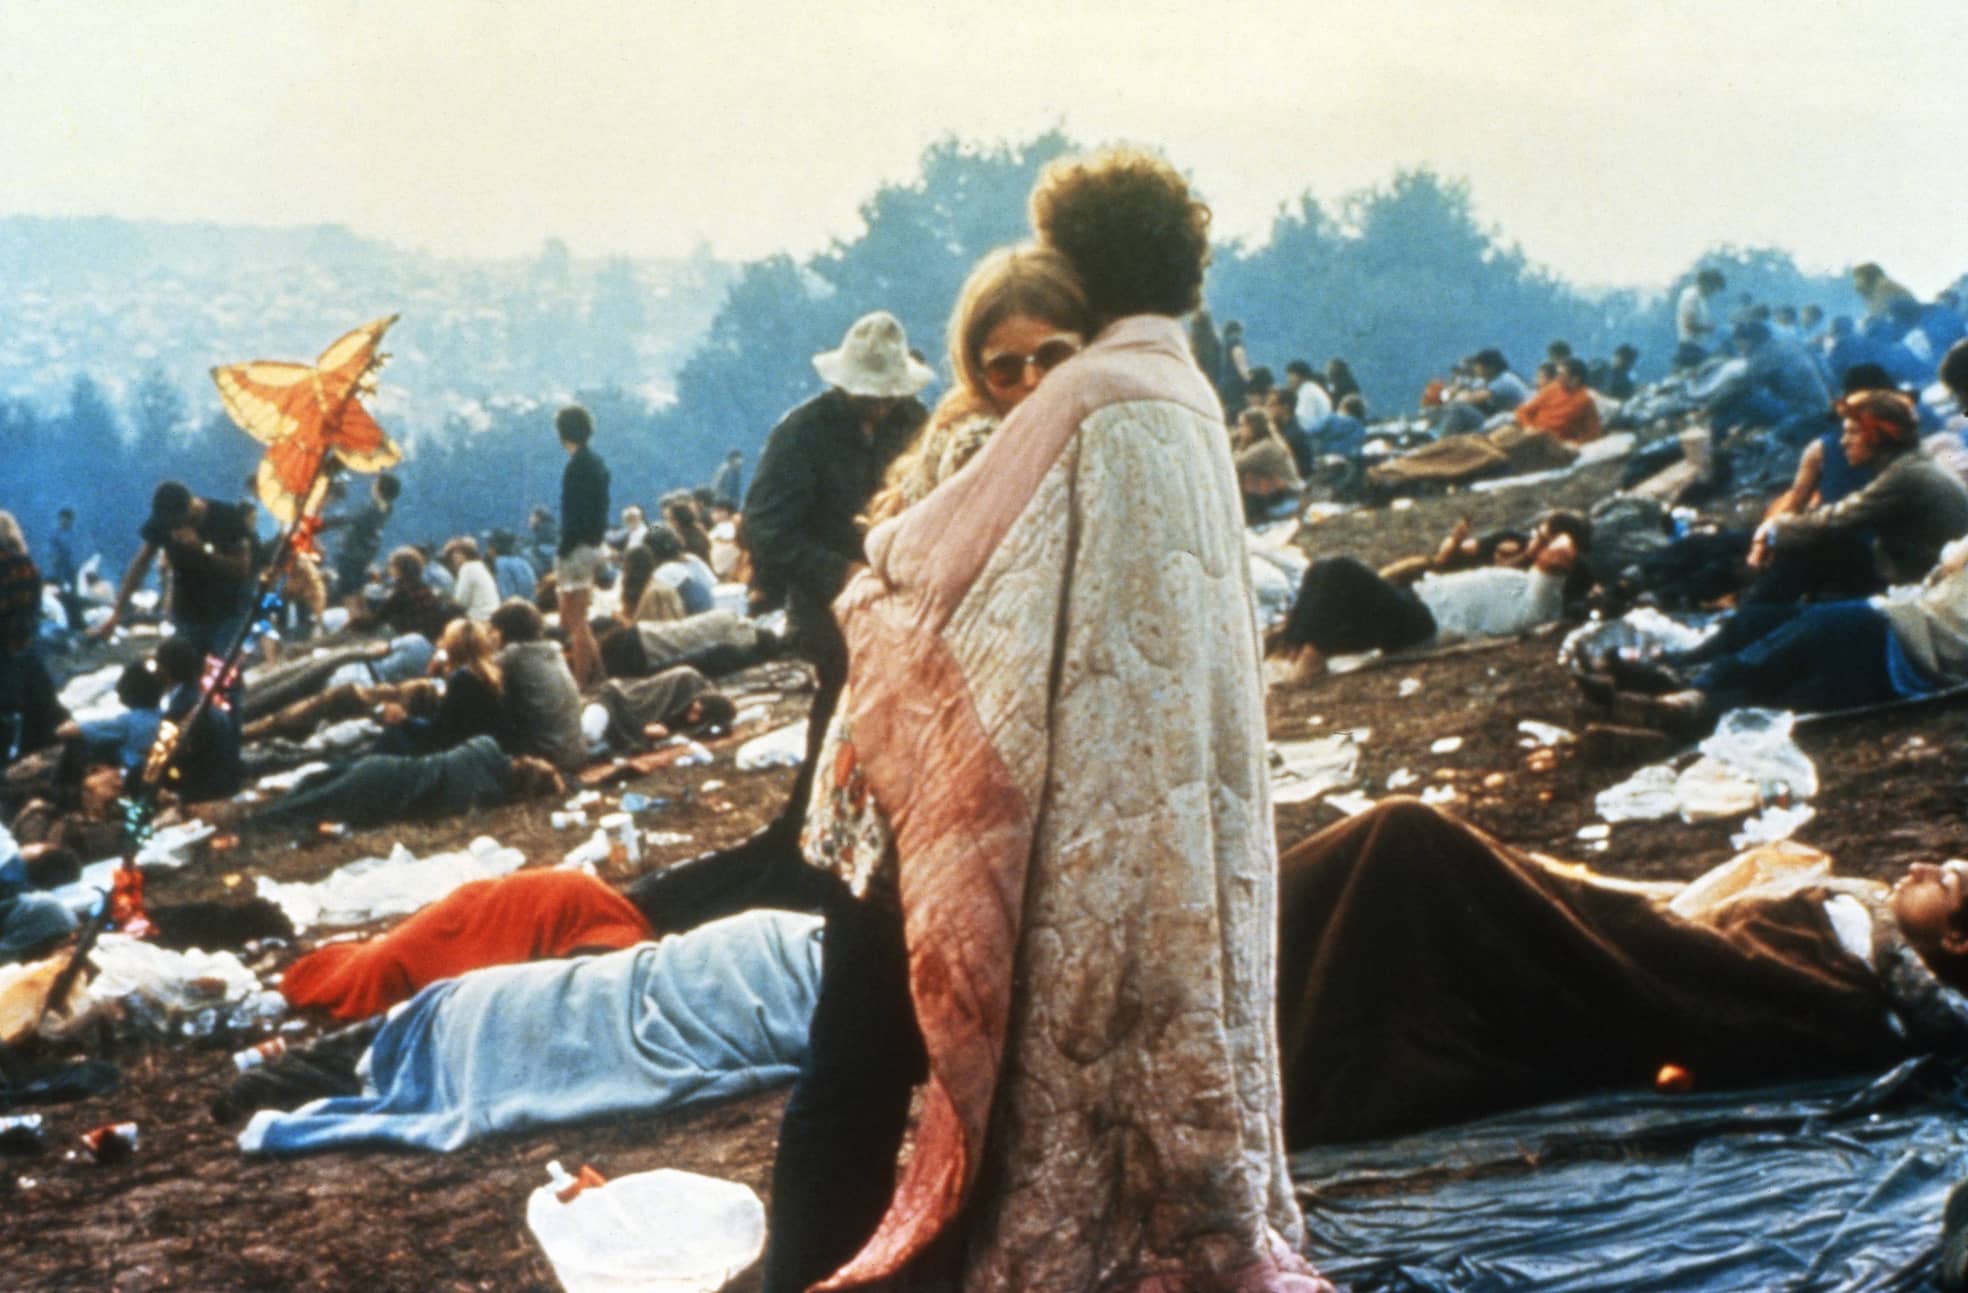 Szenenfoto aus dem Dokumentarfilm "Woodstock" von Michael Wadleigh.